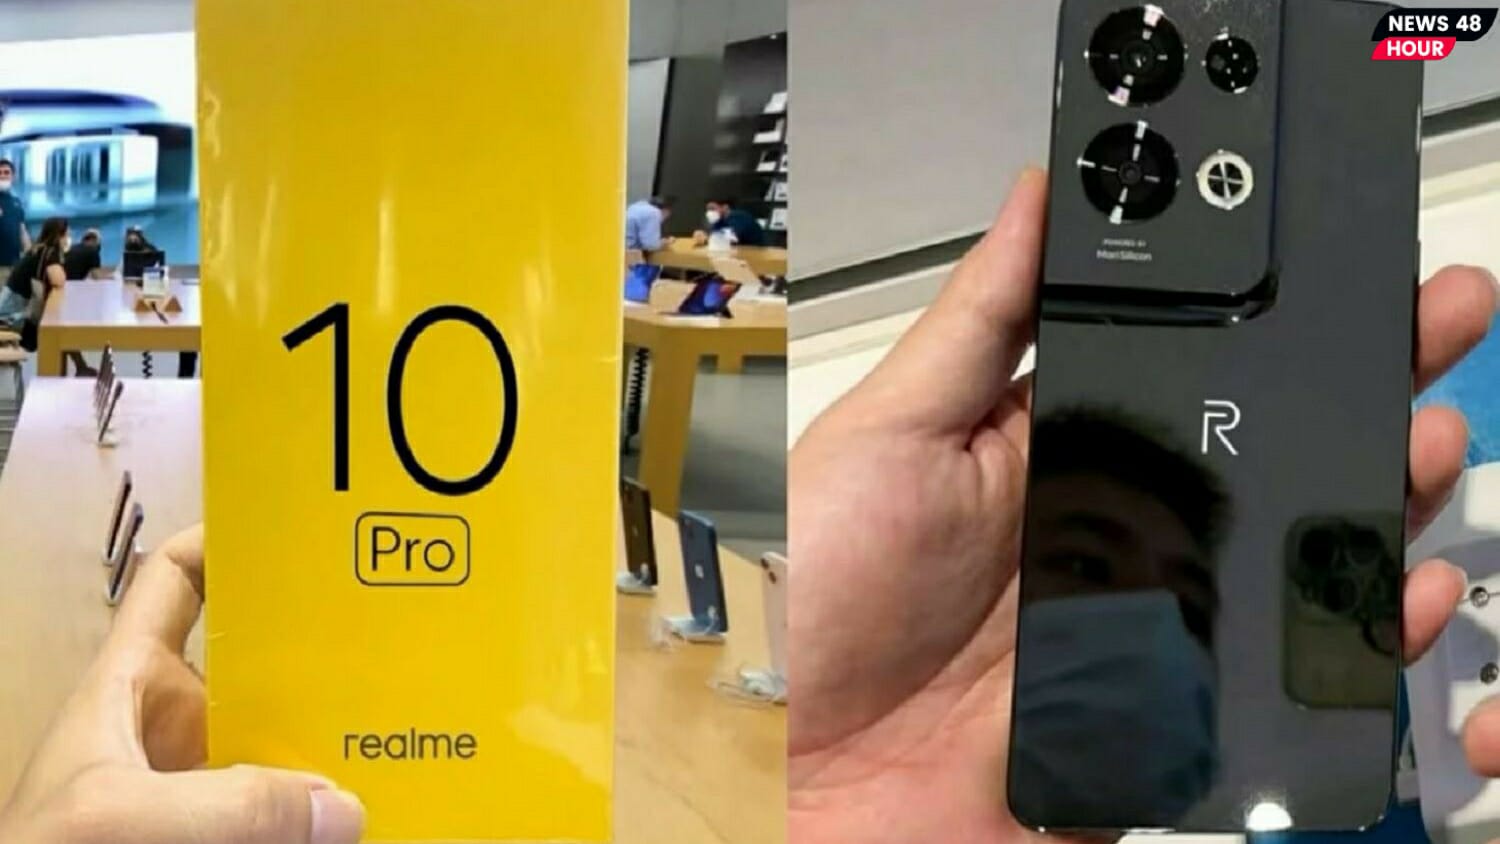 108 MP वाले यह धांसू कैमरे वाला Realme 10 Pro स्मार्टफोन अब आपको मिल रहा है बम्पर डिस्काउंट ऑफर्स के साथ। जानिए इसके ख़ास फीचर्स तथा किफायती कीमत के बारे में। 